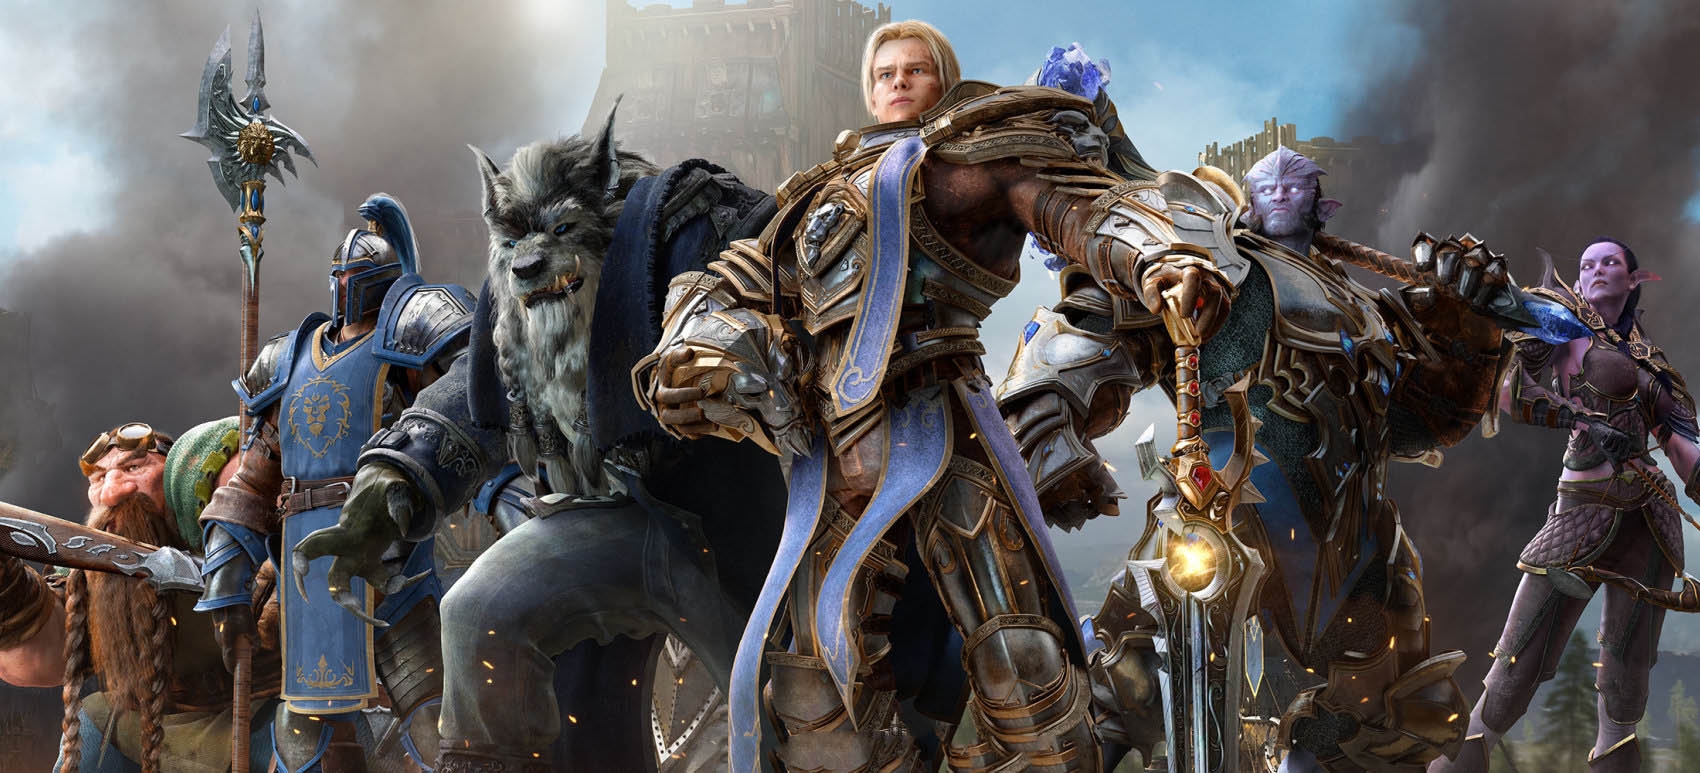 Σημάδια που μαρτυρούν ότι είστε εθισμένοι στο World of Warcraft